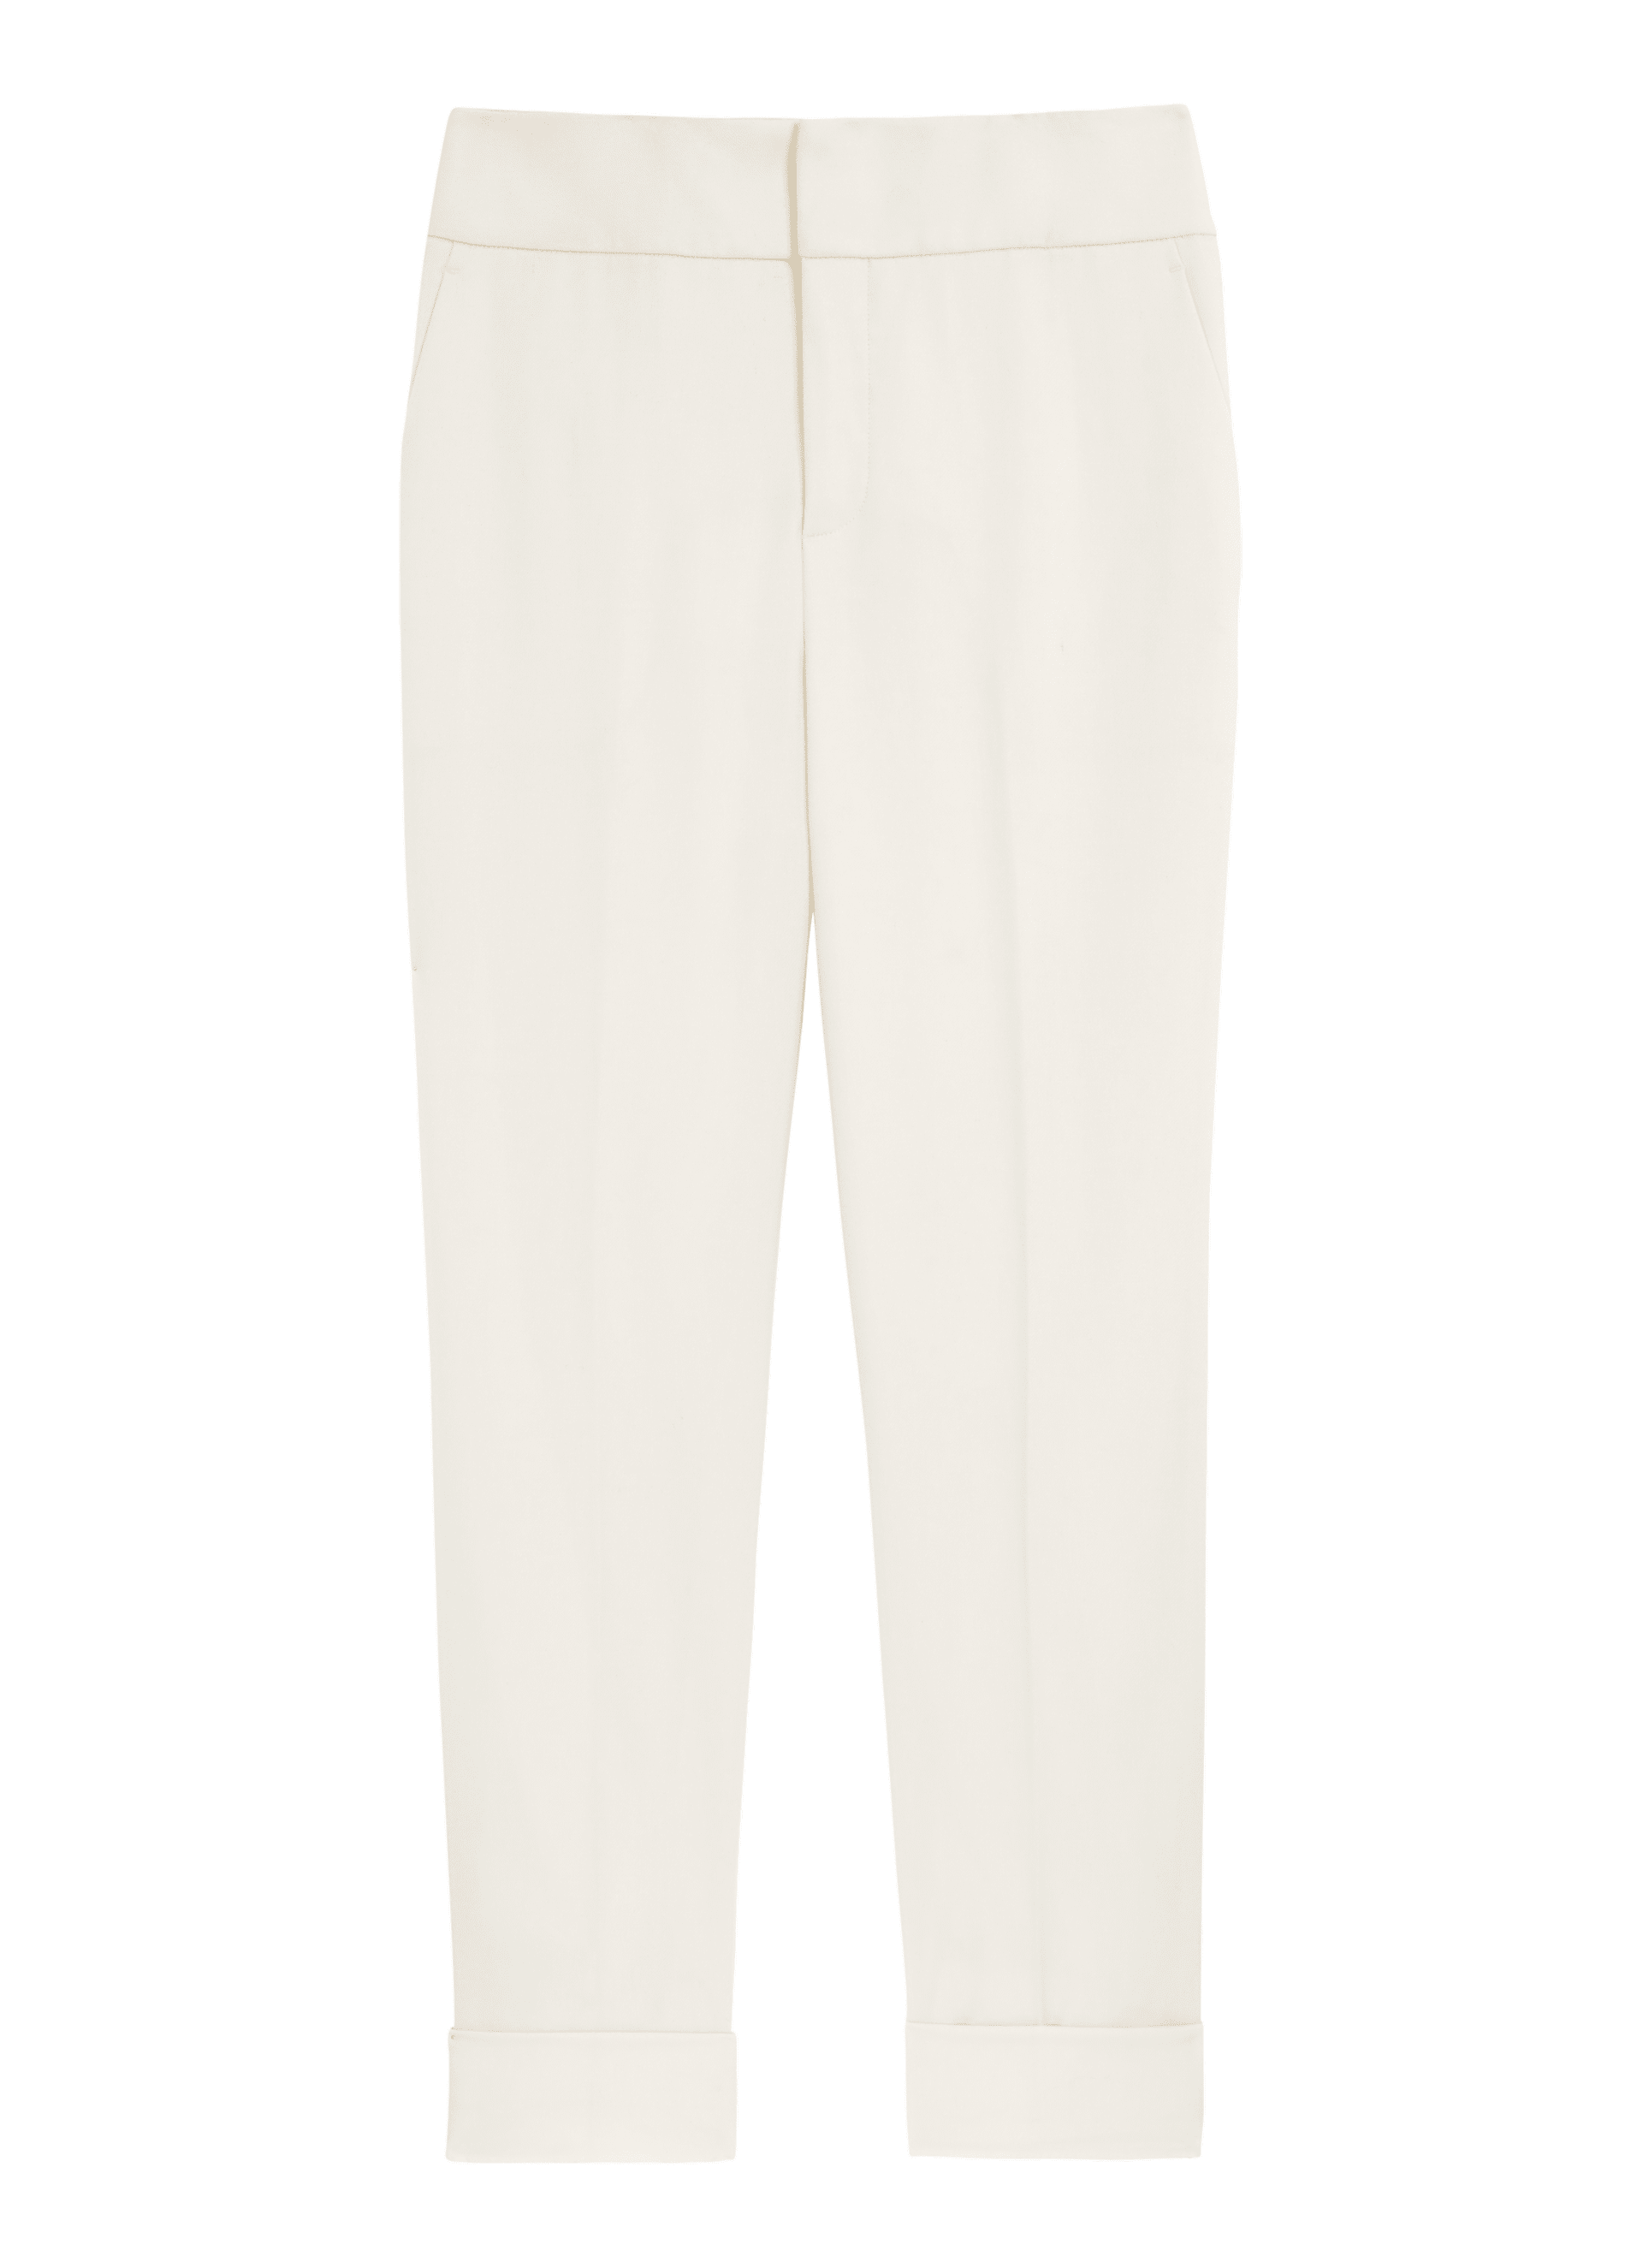 Joss Off White Suit | SUISTUDIO Online Store